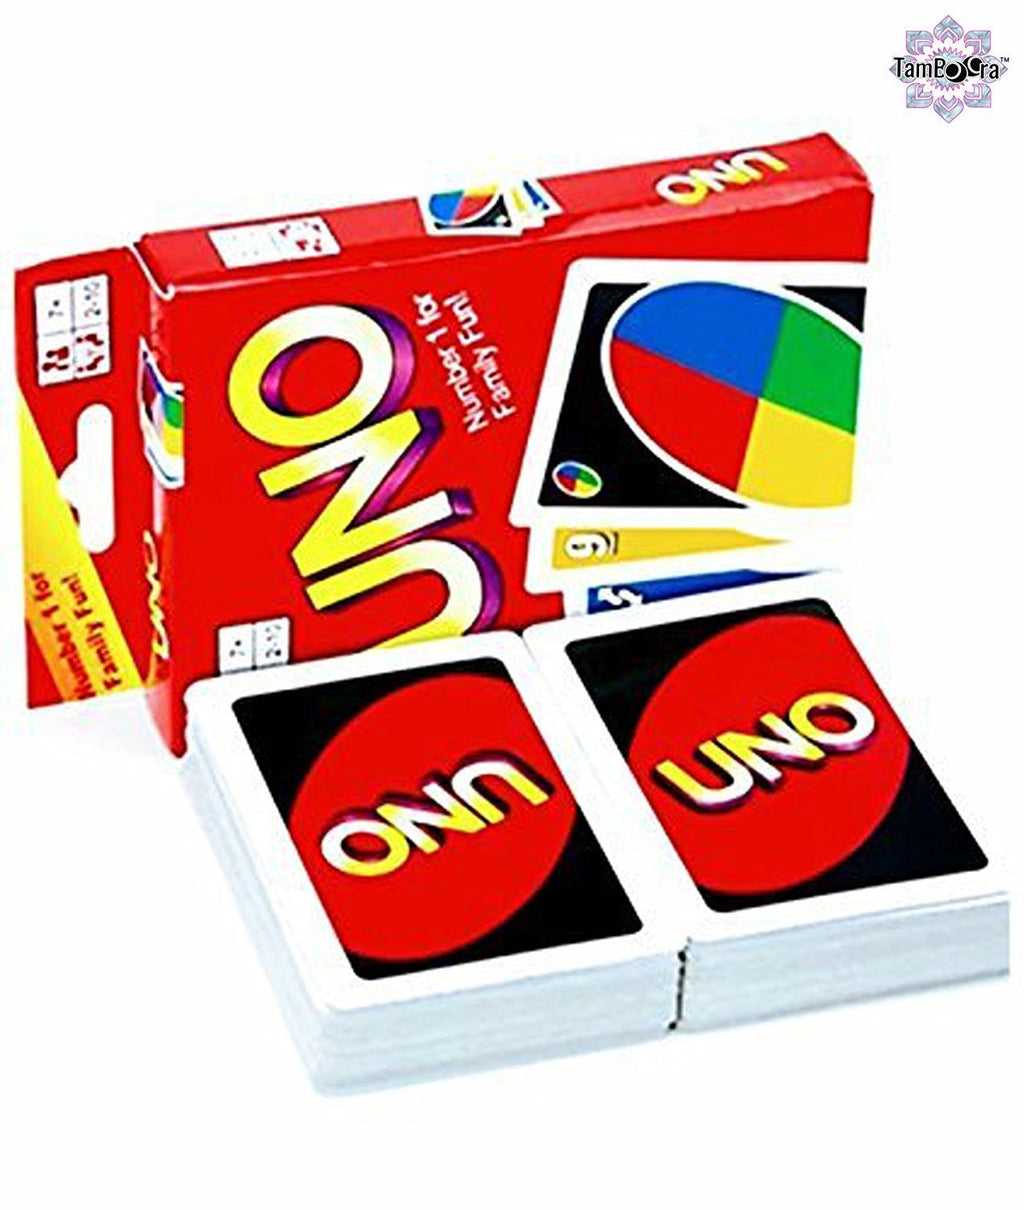 Jogo De Cartas Uno Original com Preços Incríveis no Shoptime